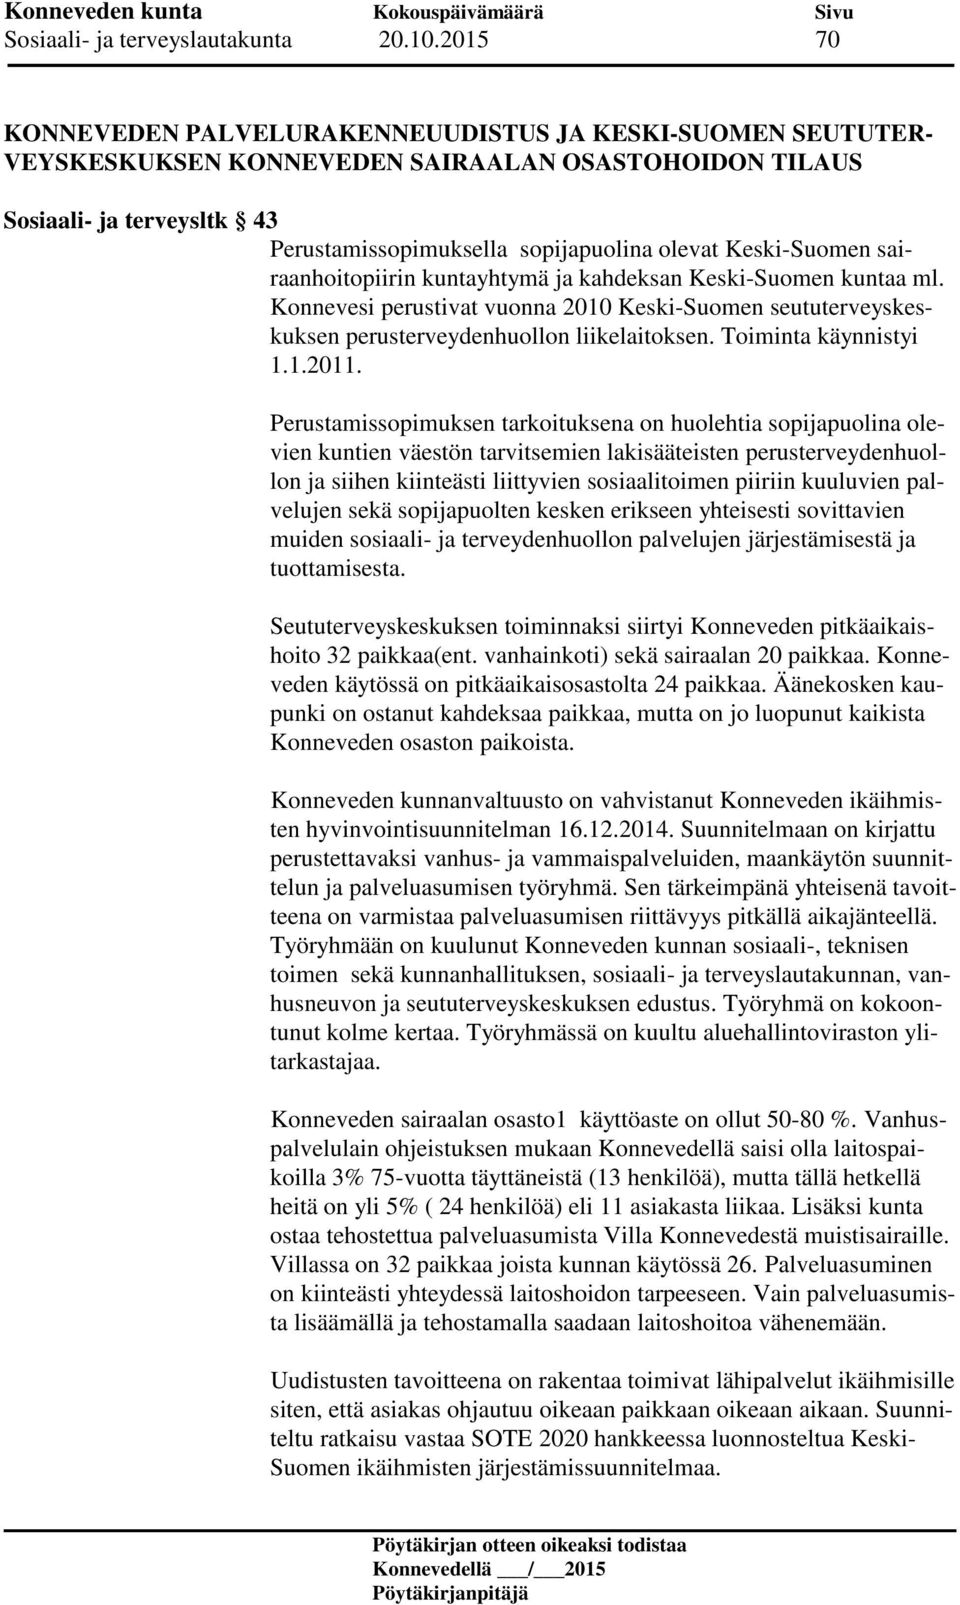 Keski-Suomen sairaanhoitopiirin kuntayhtymä ja kahdeksan Keski-Suomen kuntaa ml. Konnevesi perustivat vuonna 2010 Keski-Suomen seututerveyskeskuksen perusterveydenhuollon liikelaitoksen.